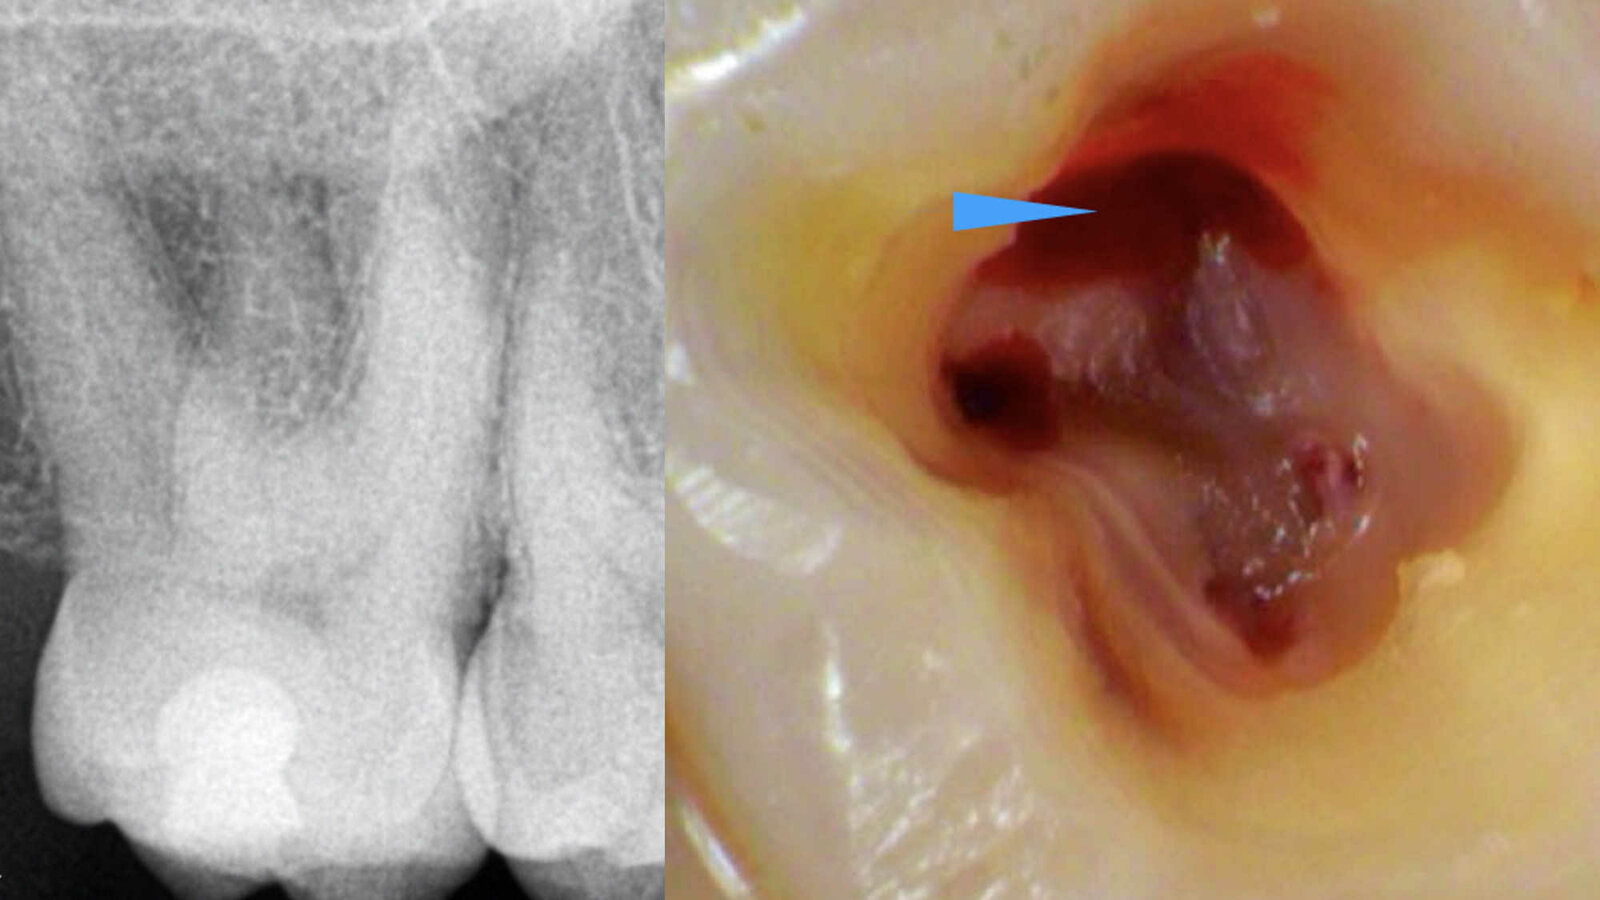 Kliničko lečenje drugog molarnog kanala u maksili u različitim anatomskim situacijama